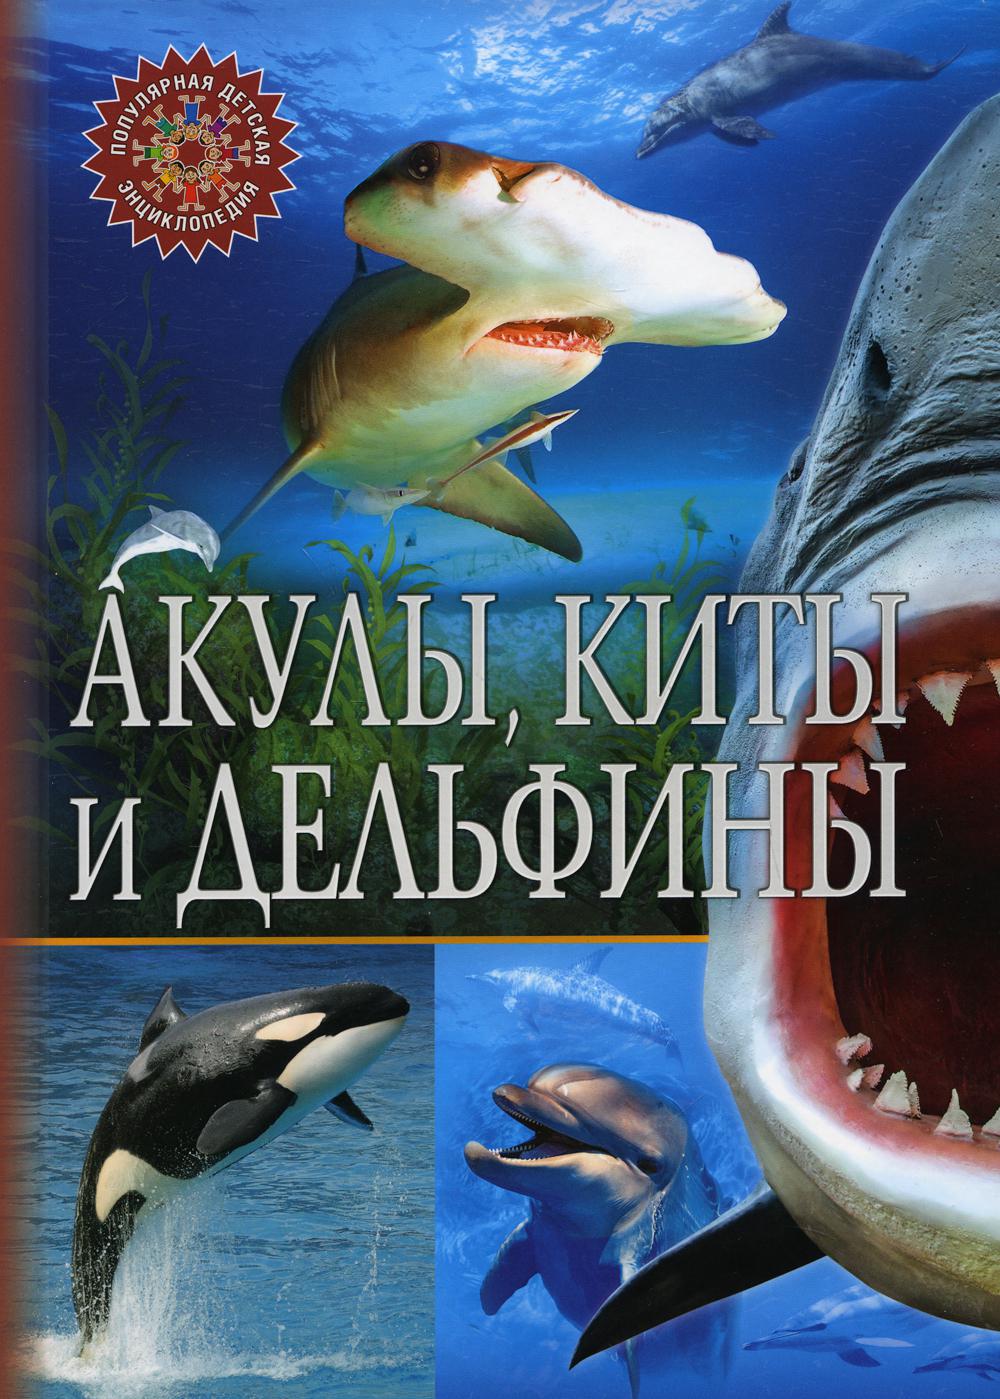 Акулы, киты и дельфины. Популярная детская энциклопедия